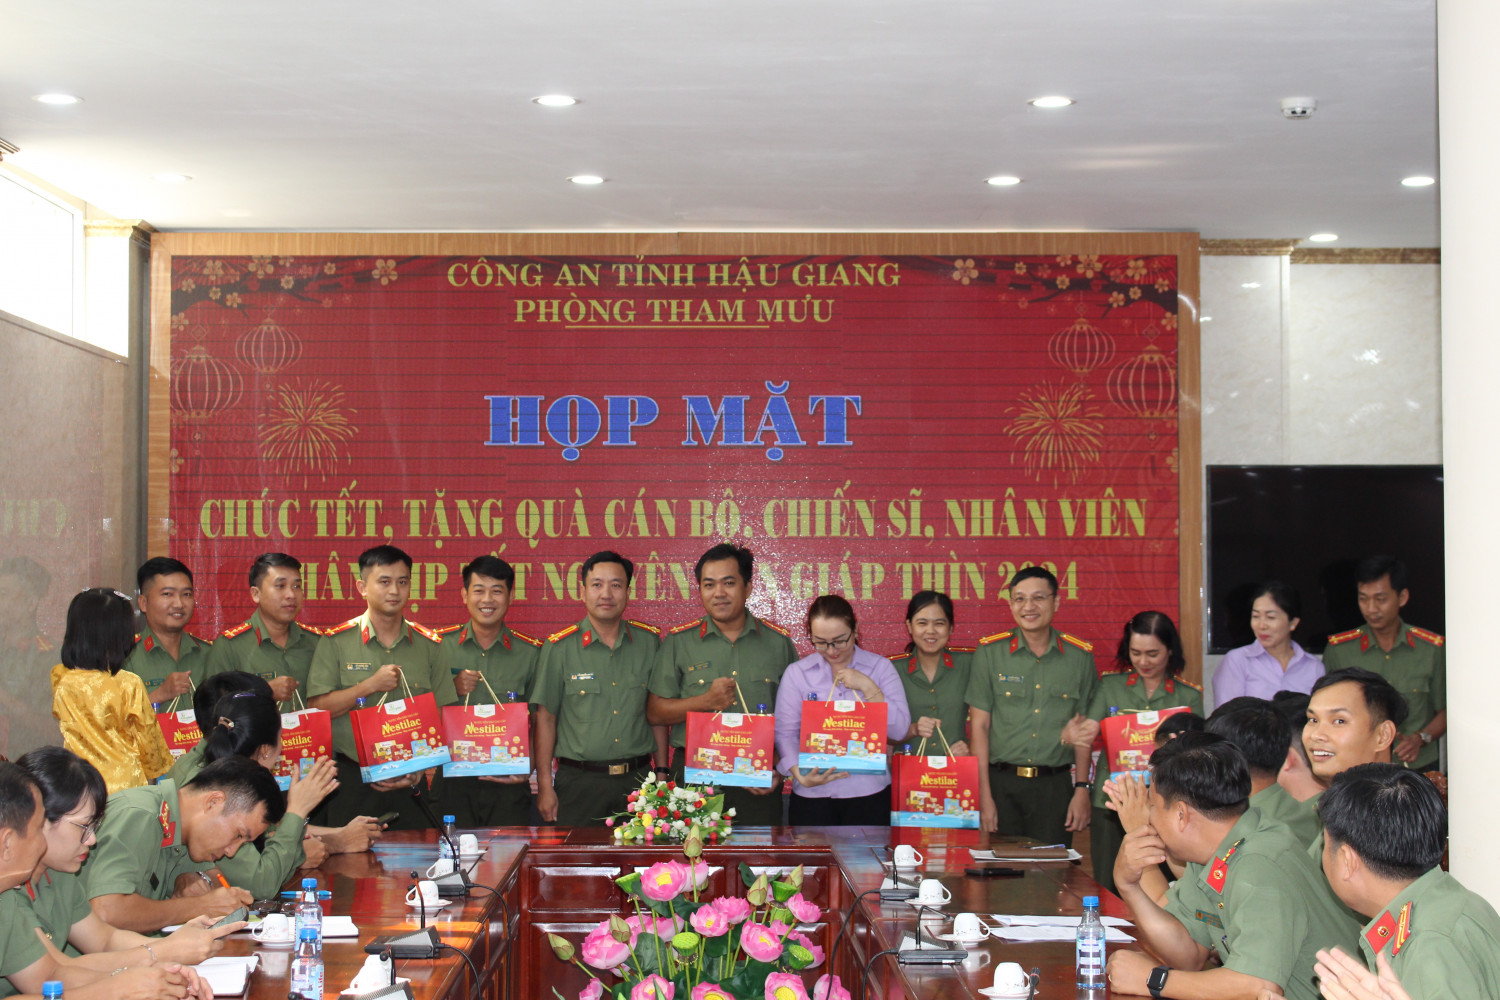 Đồng chí Thượng tá Trần Nguyễn Hòa Thơ, Bí thư Đảng ủy cơ sở, Trưởng Phòng Tham mưu tặng quà cho cán bộ, chiến sỹ trong đơn vị vào chiều ngày 05/02/2024